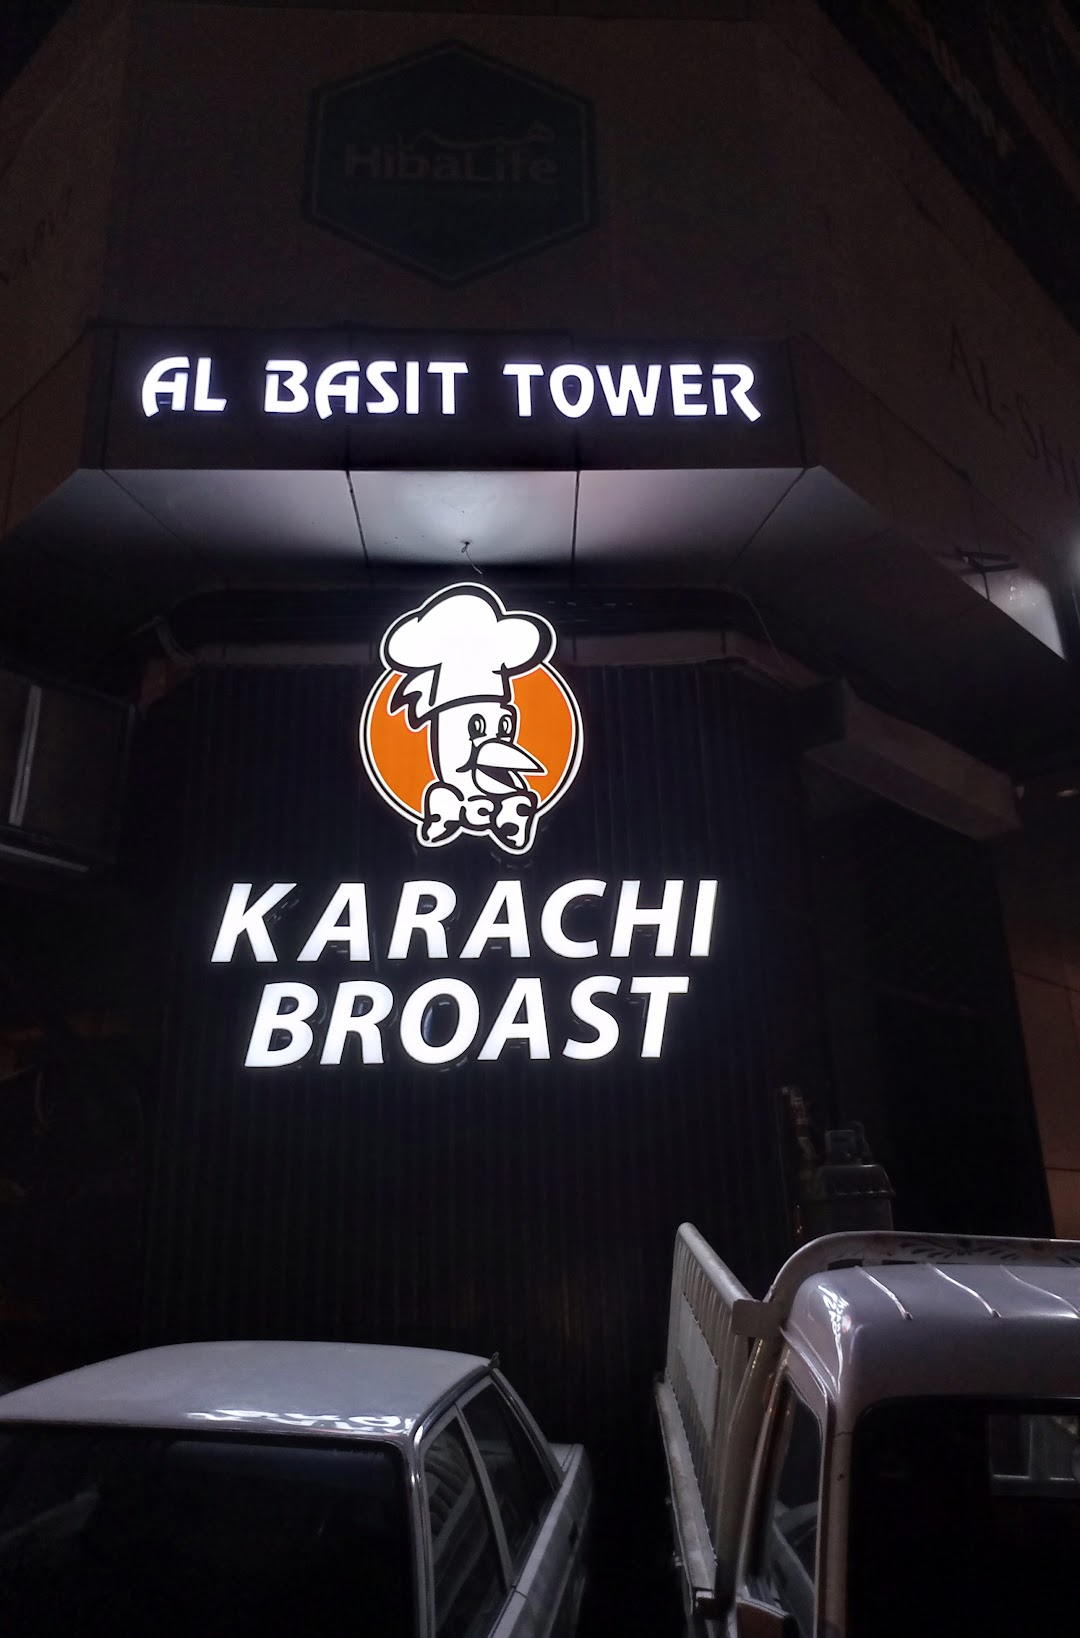 Karachi Broast - Rashid Minhas Road